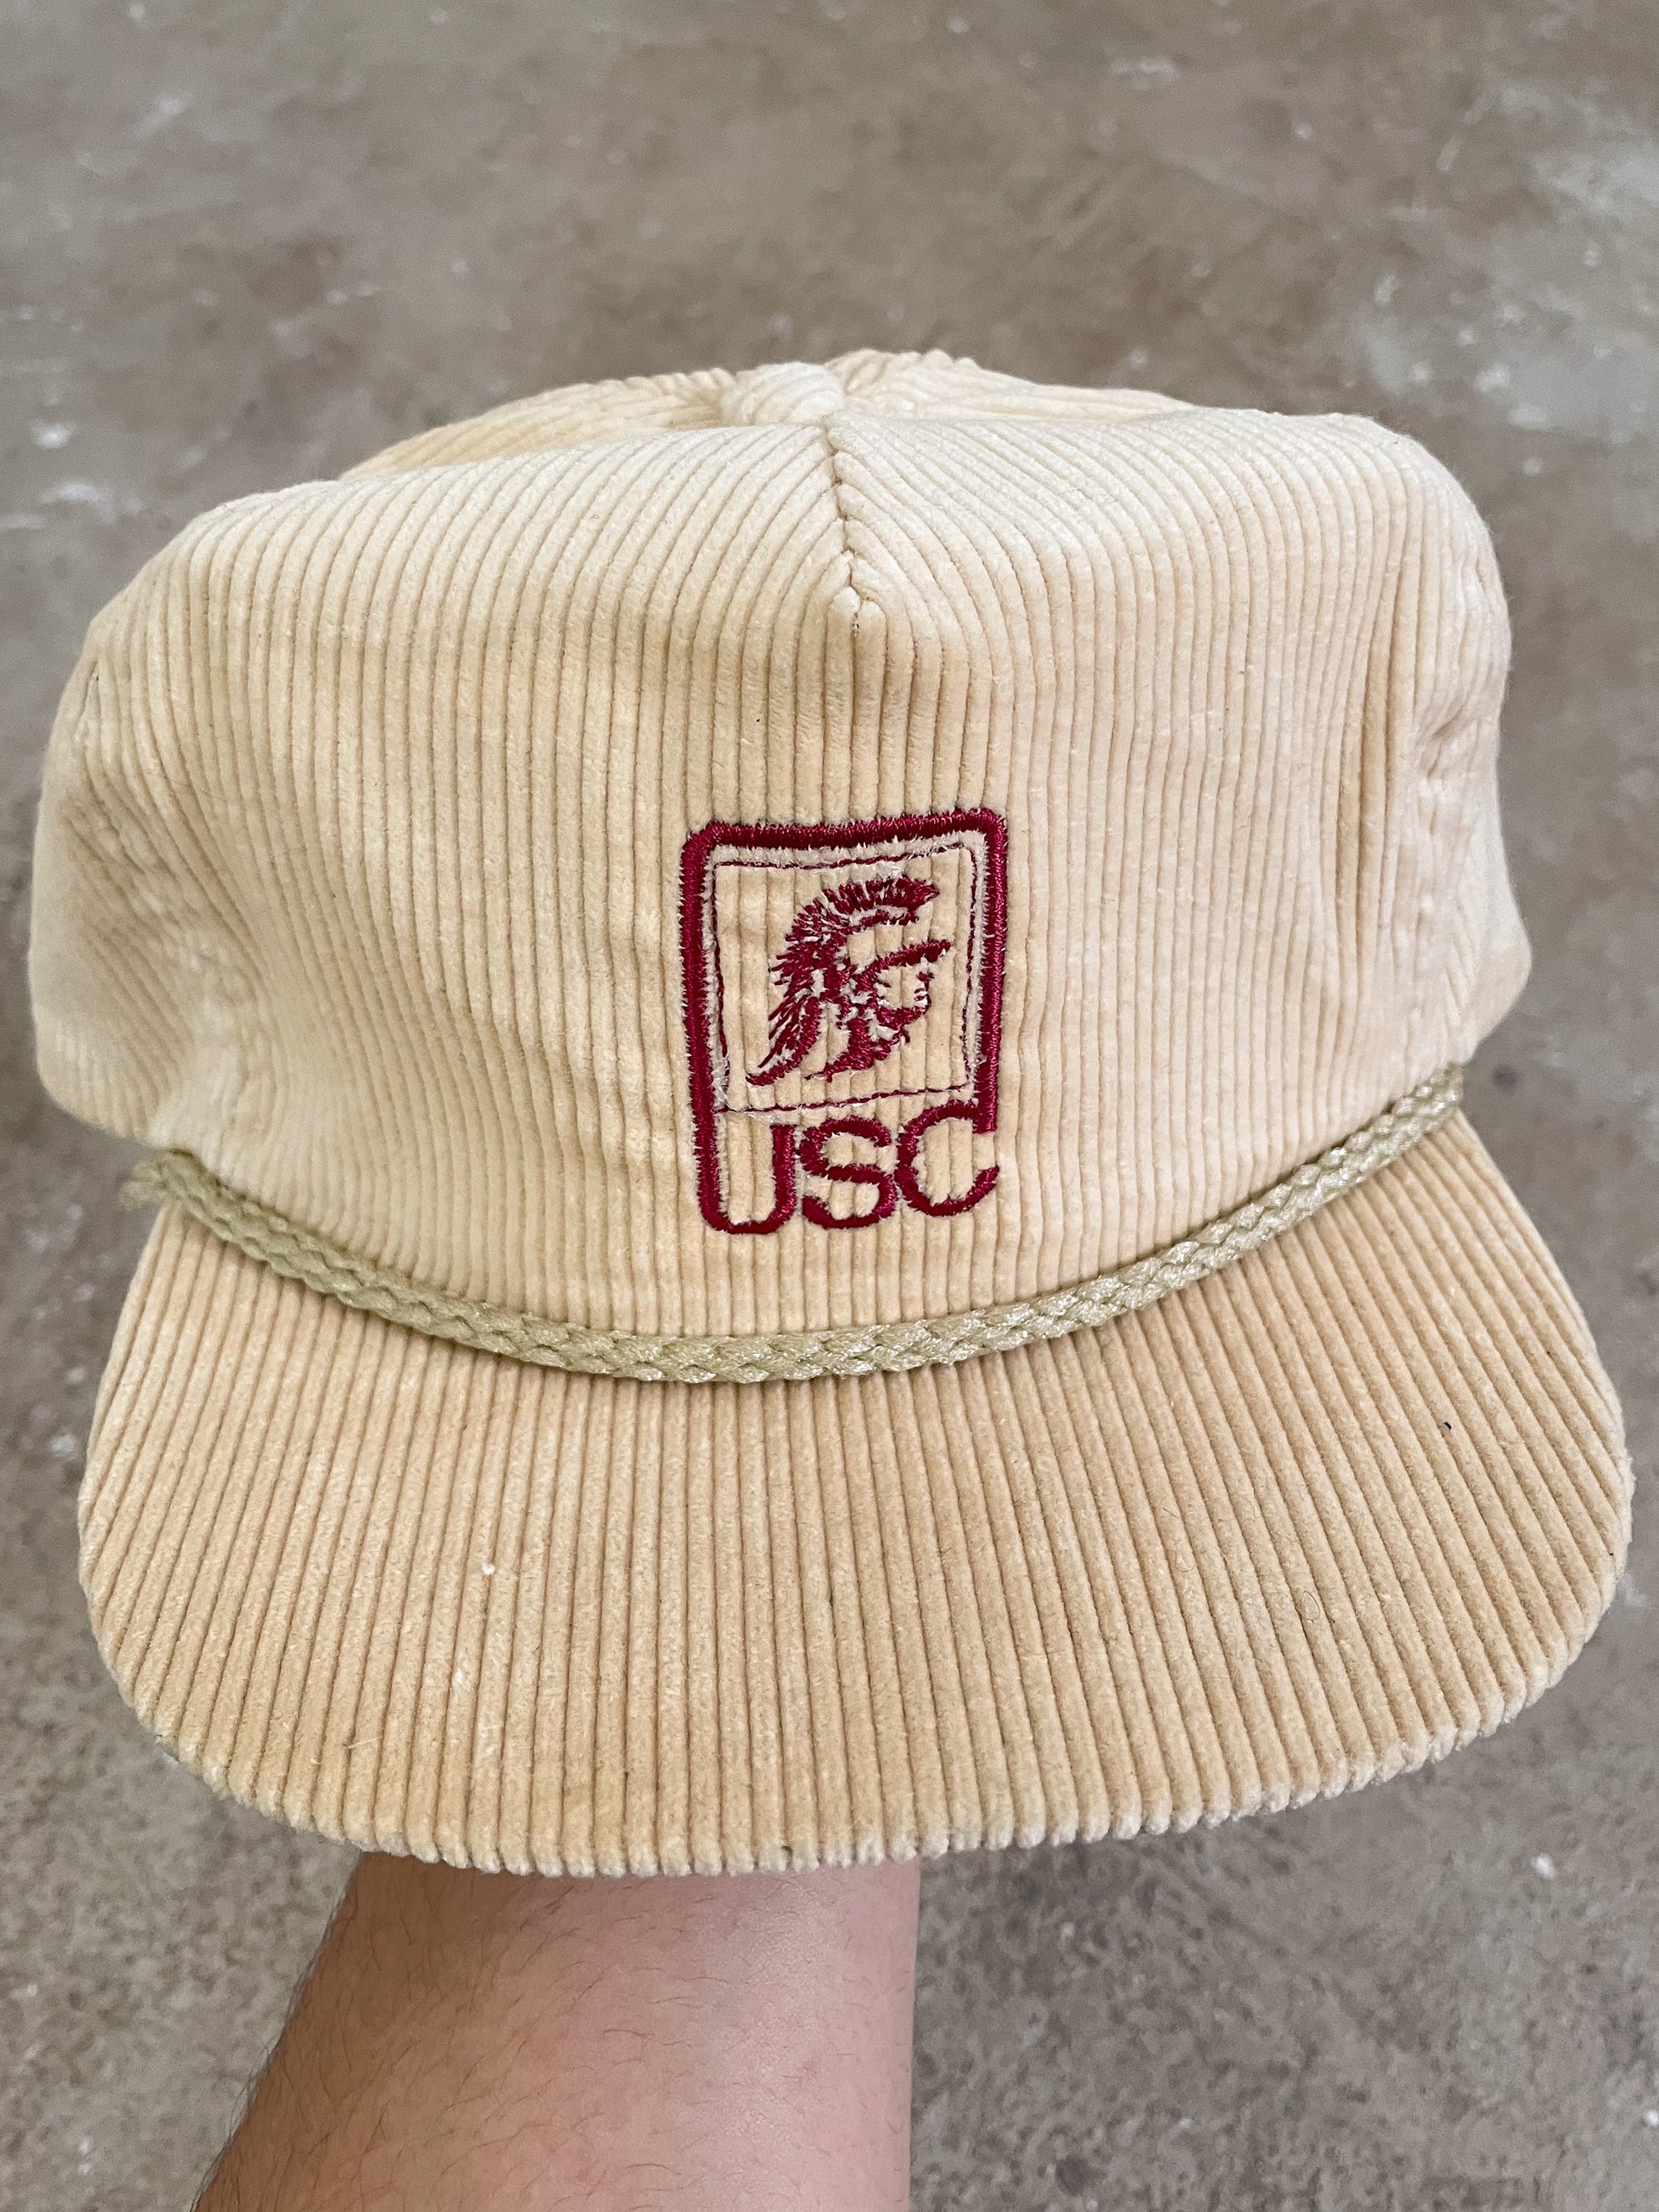 1980s “USC” Corduroy Trucker Hat